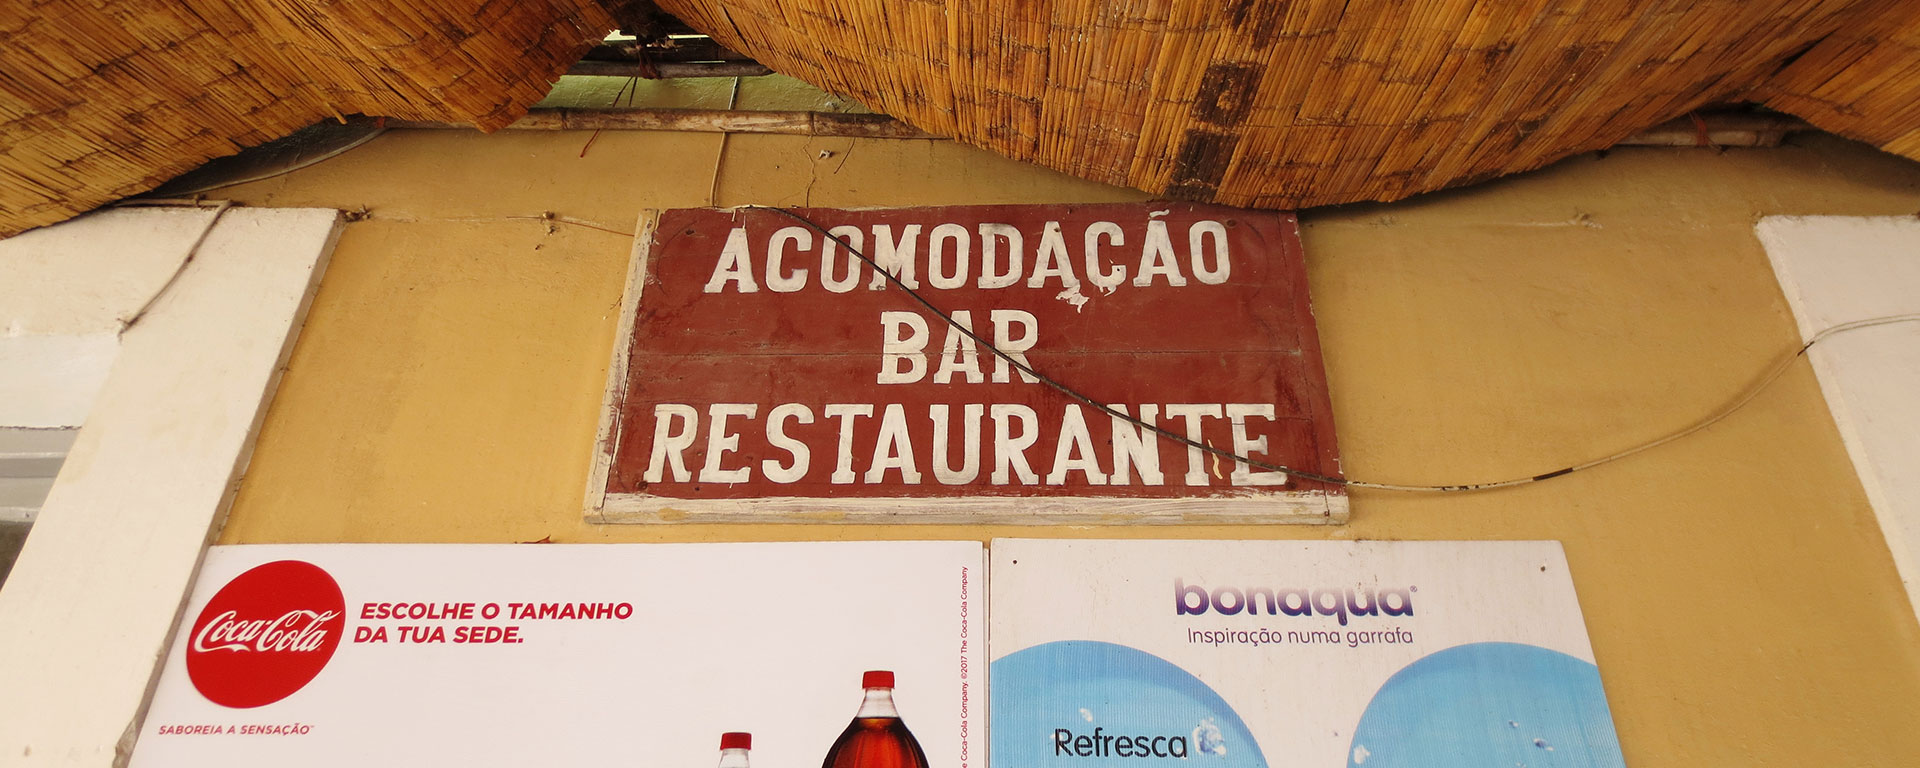 ilha-de-mozambique-restaurants